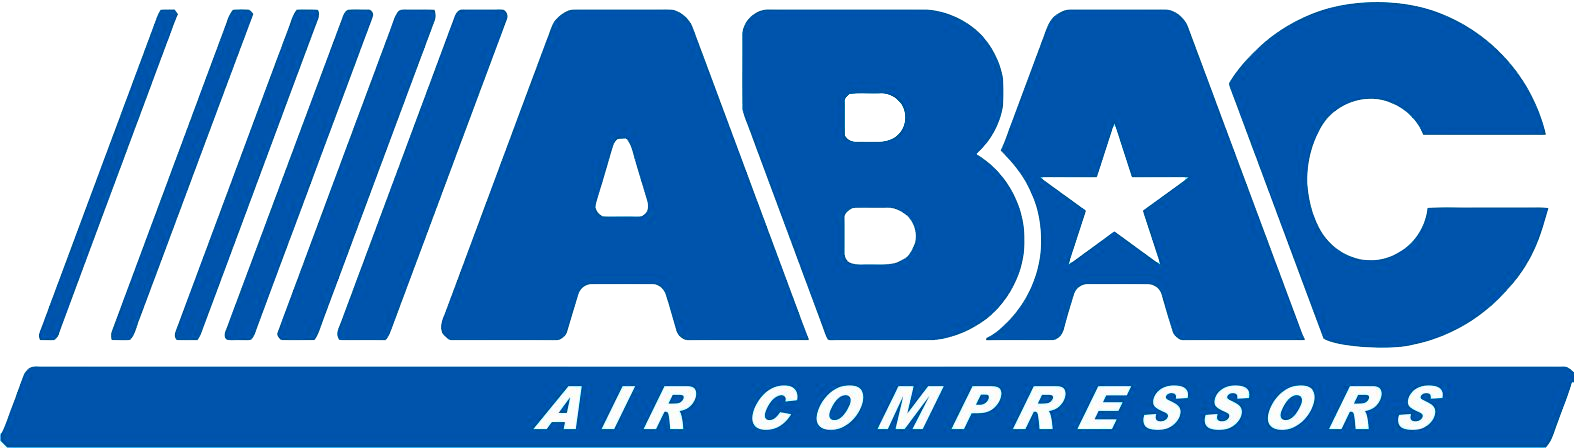 ABAC компрессоры купить в Хабаровске с доставкой по Дальнему востоку